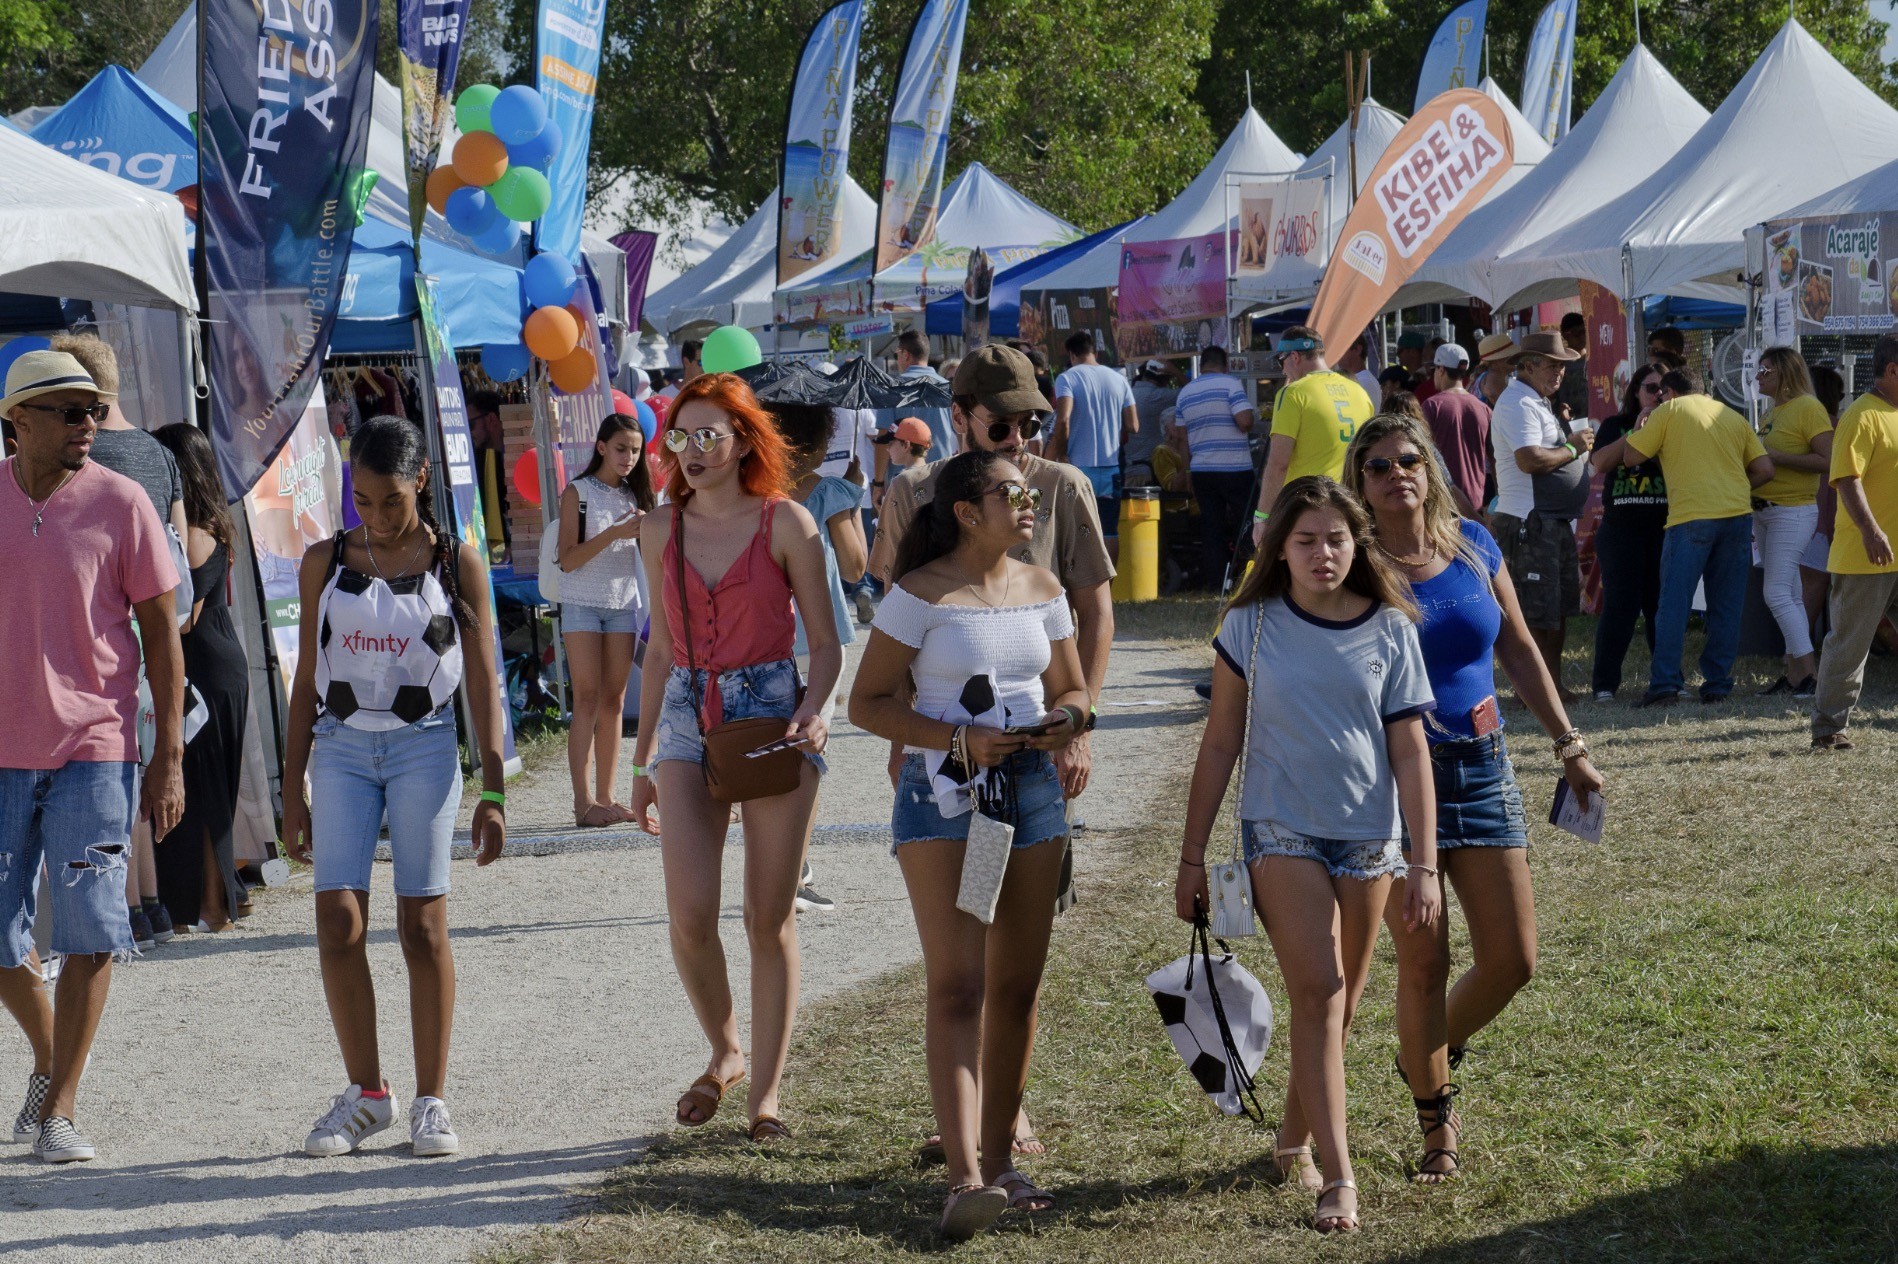 Flórida recebe 12th Annual Brazilian Festival neste sábado